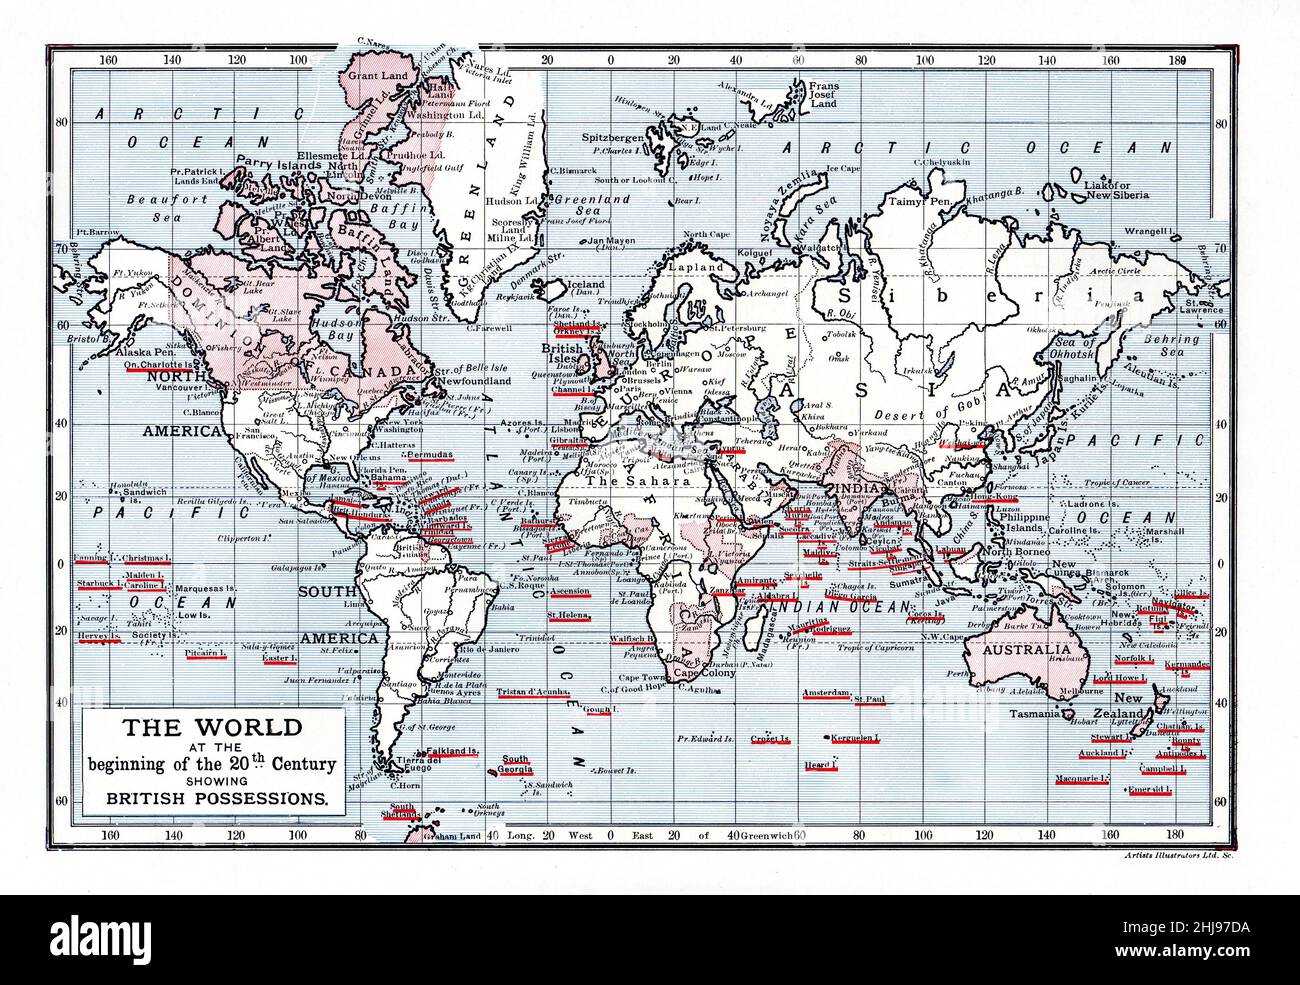 Ilustración en color; Mapa del mundo a principios del siglo 20th mostrando posesiones británicas Foto de stock